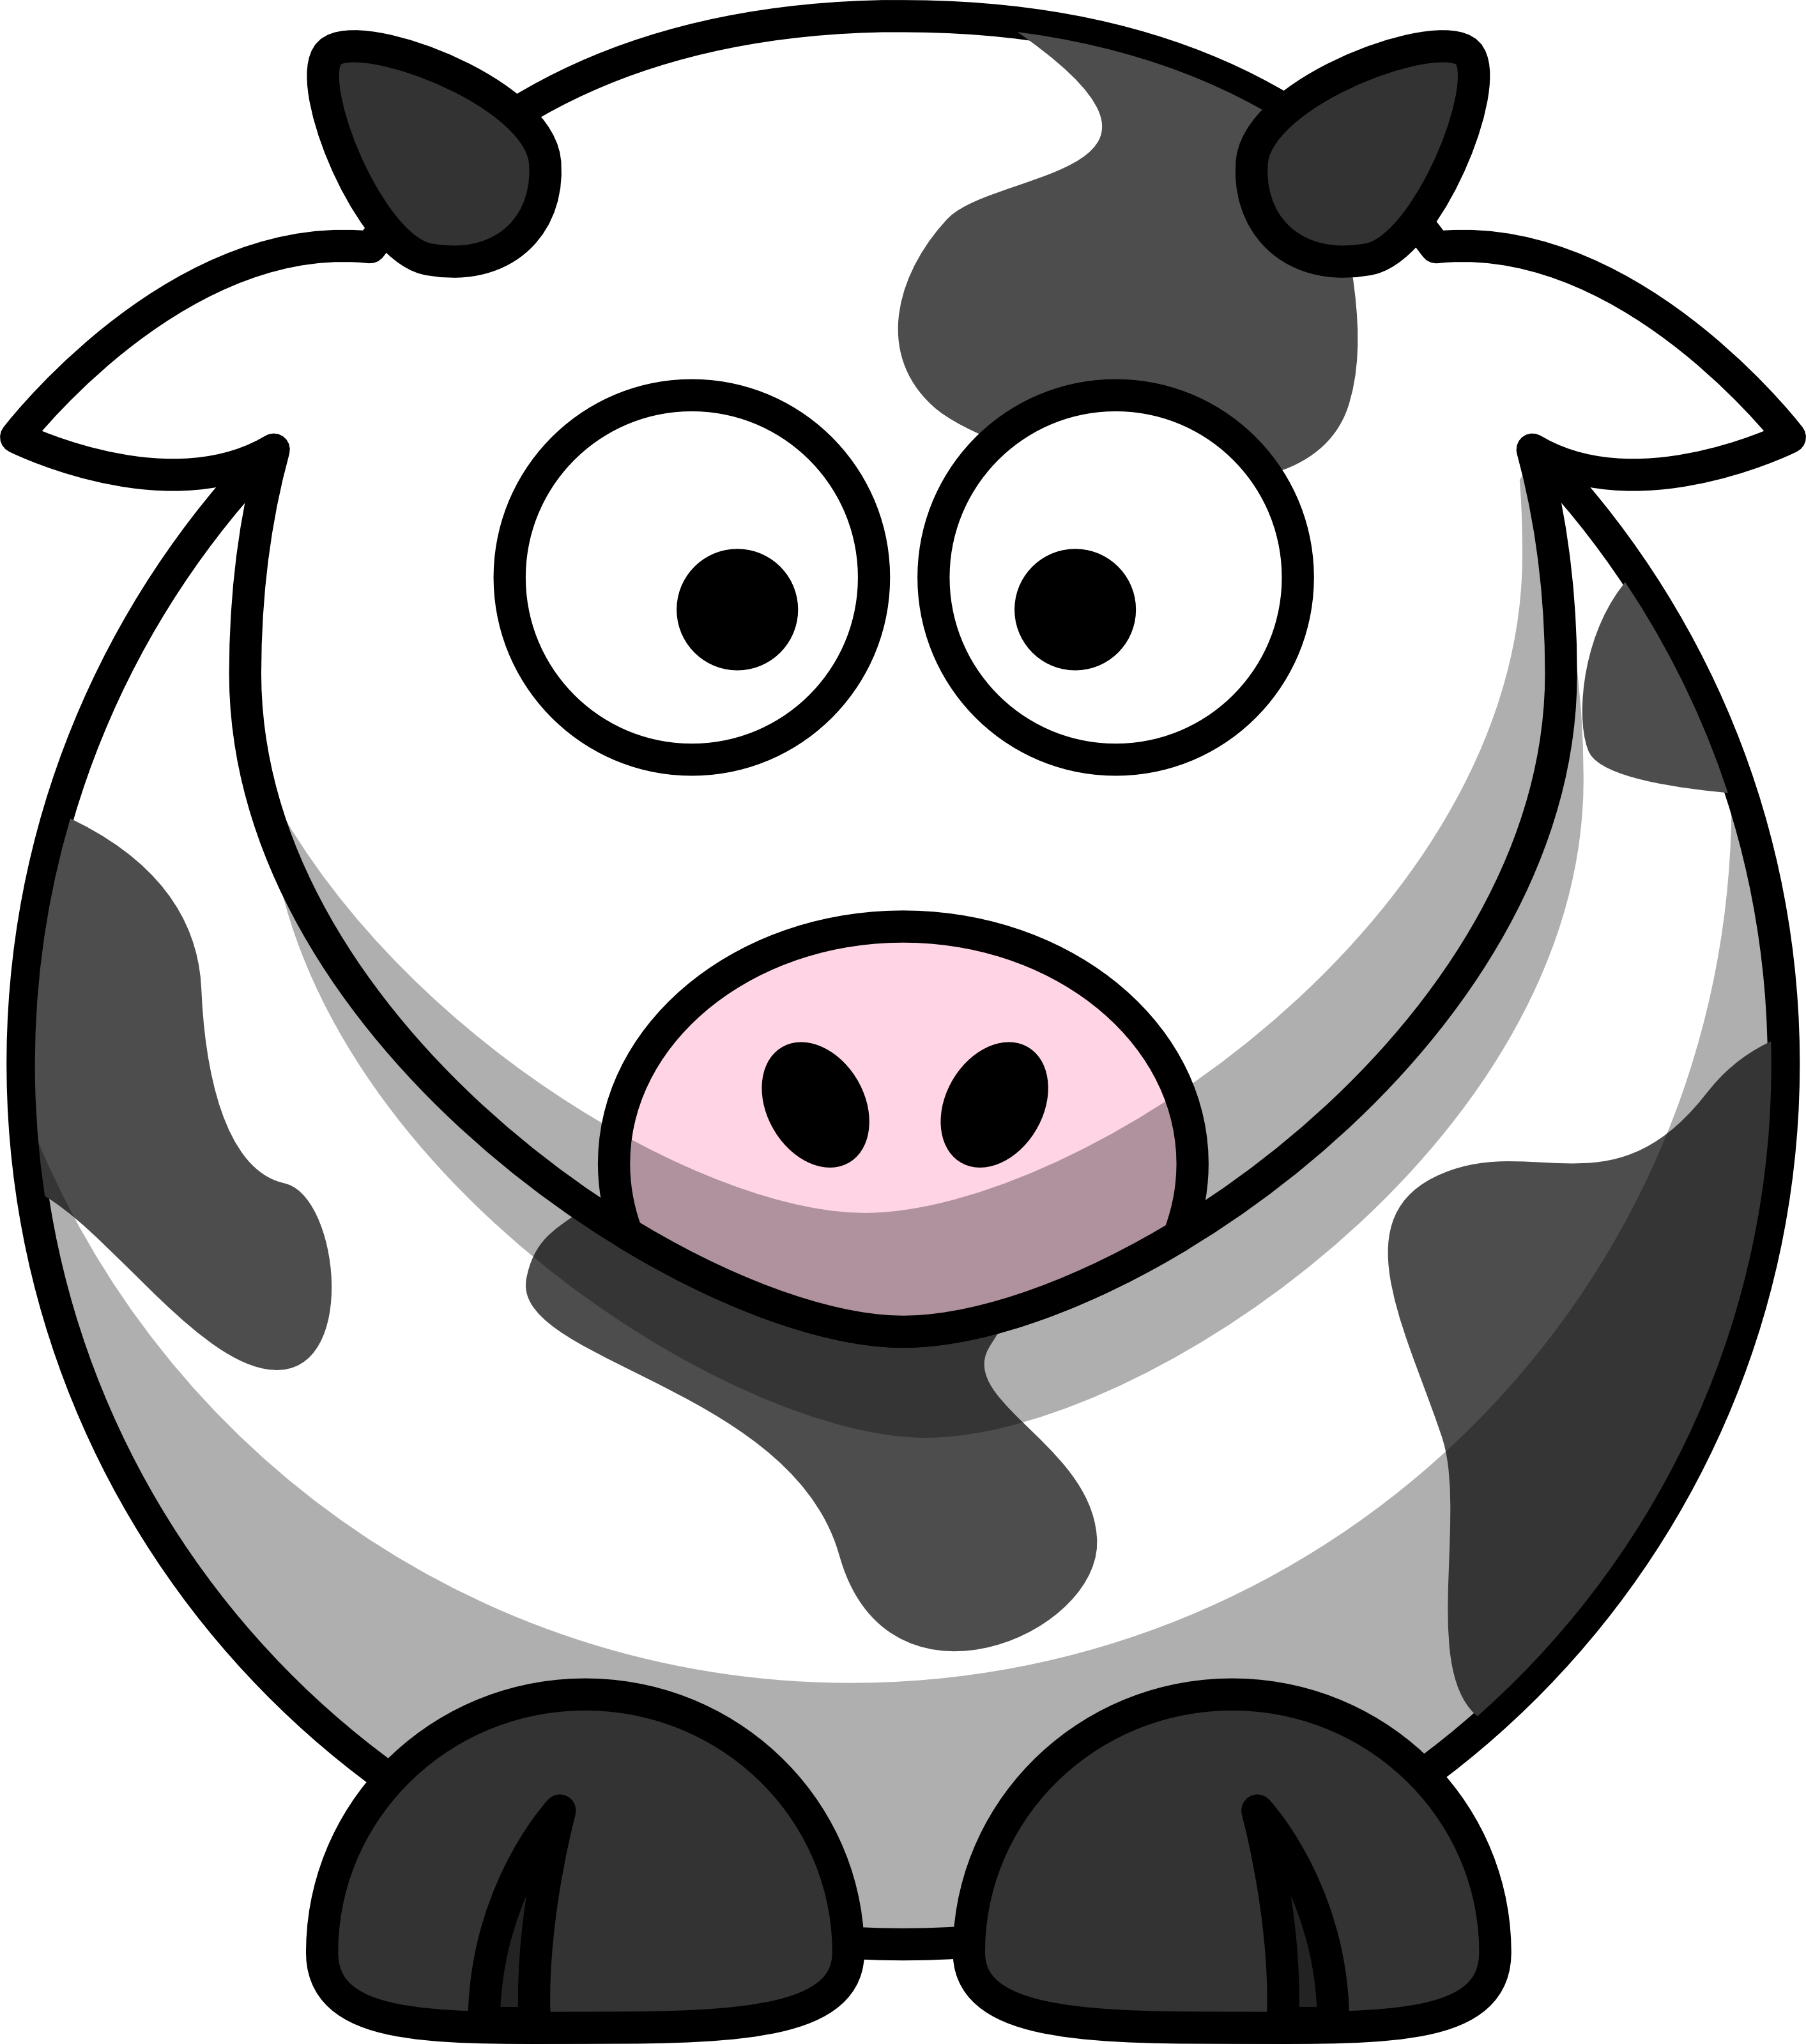 cow logos clip art - photo #24